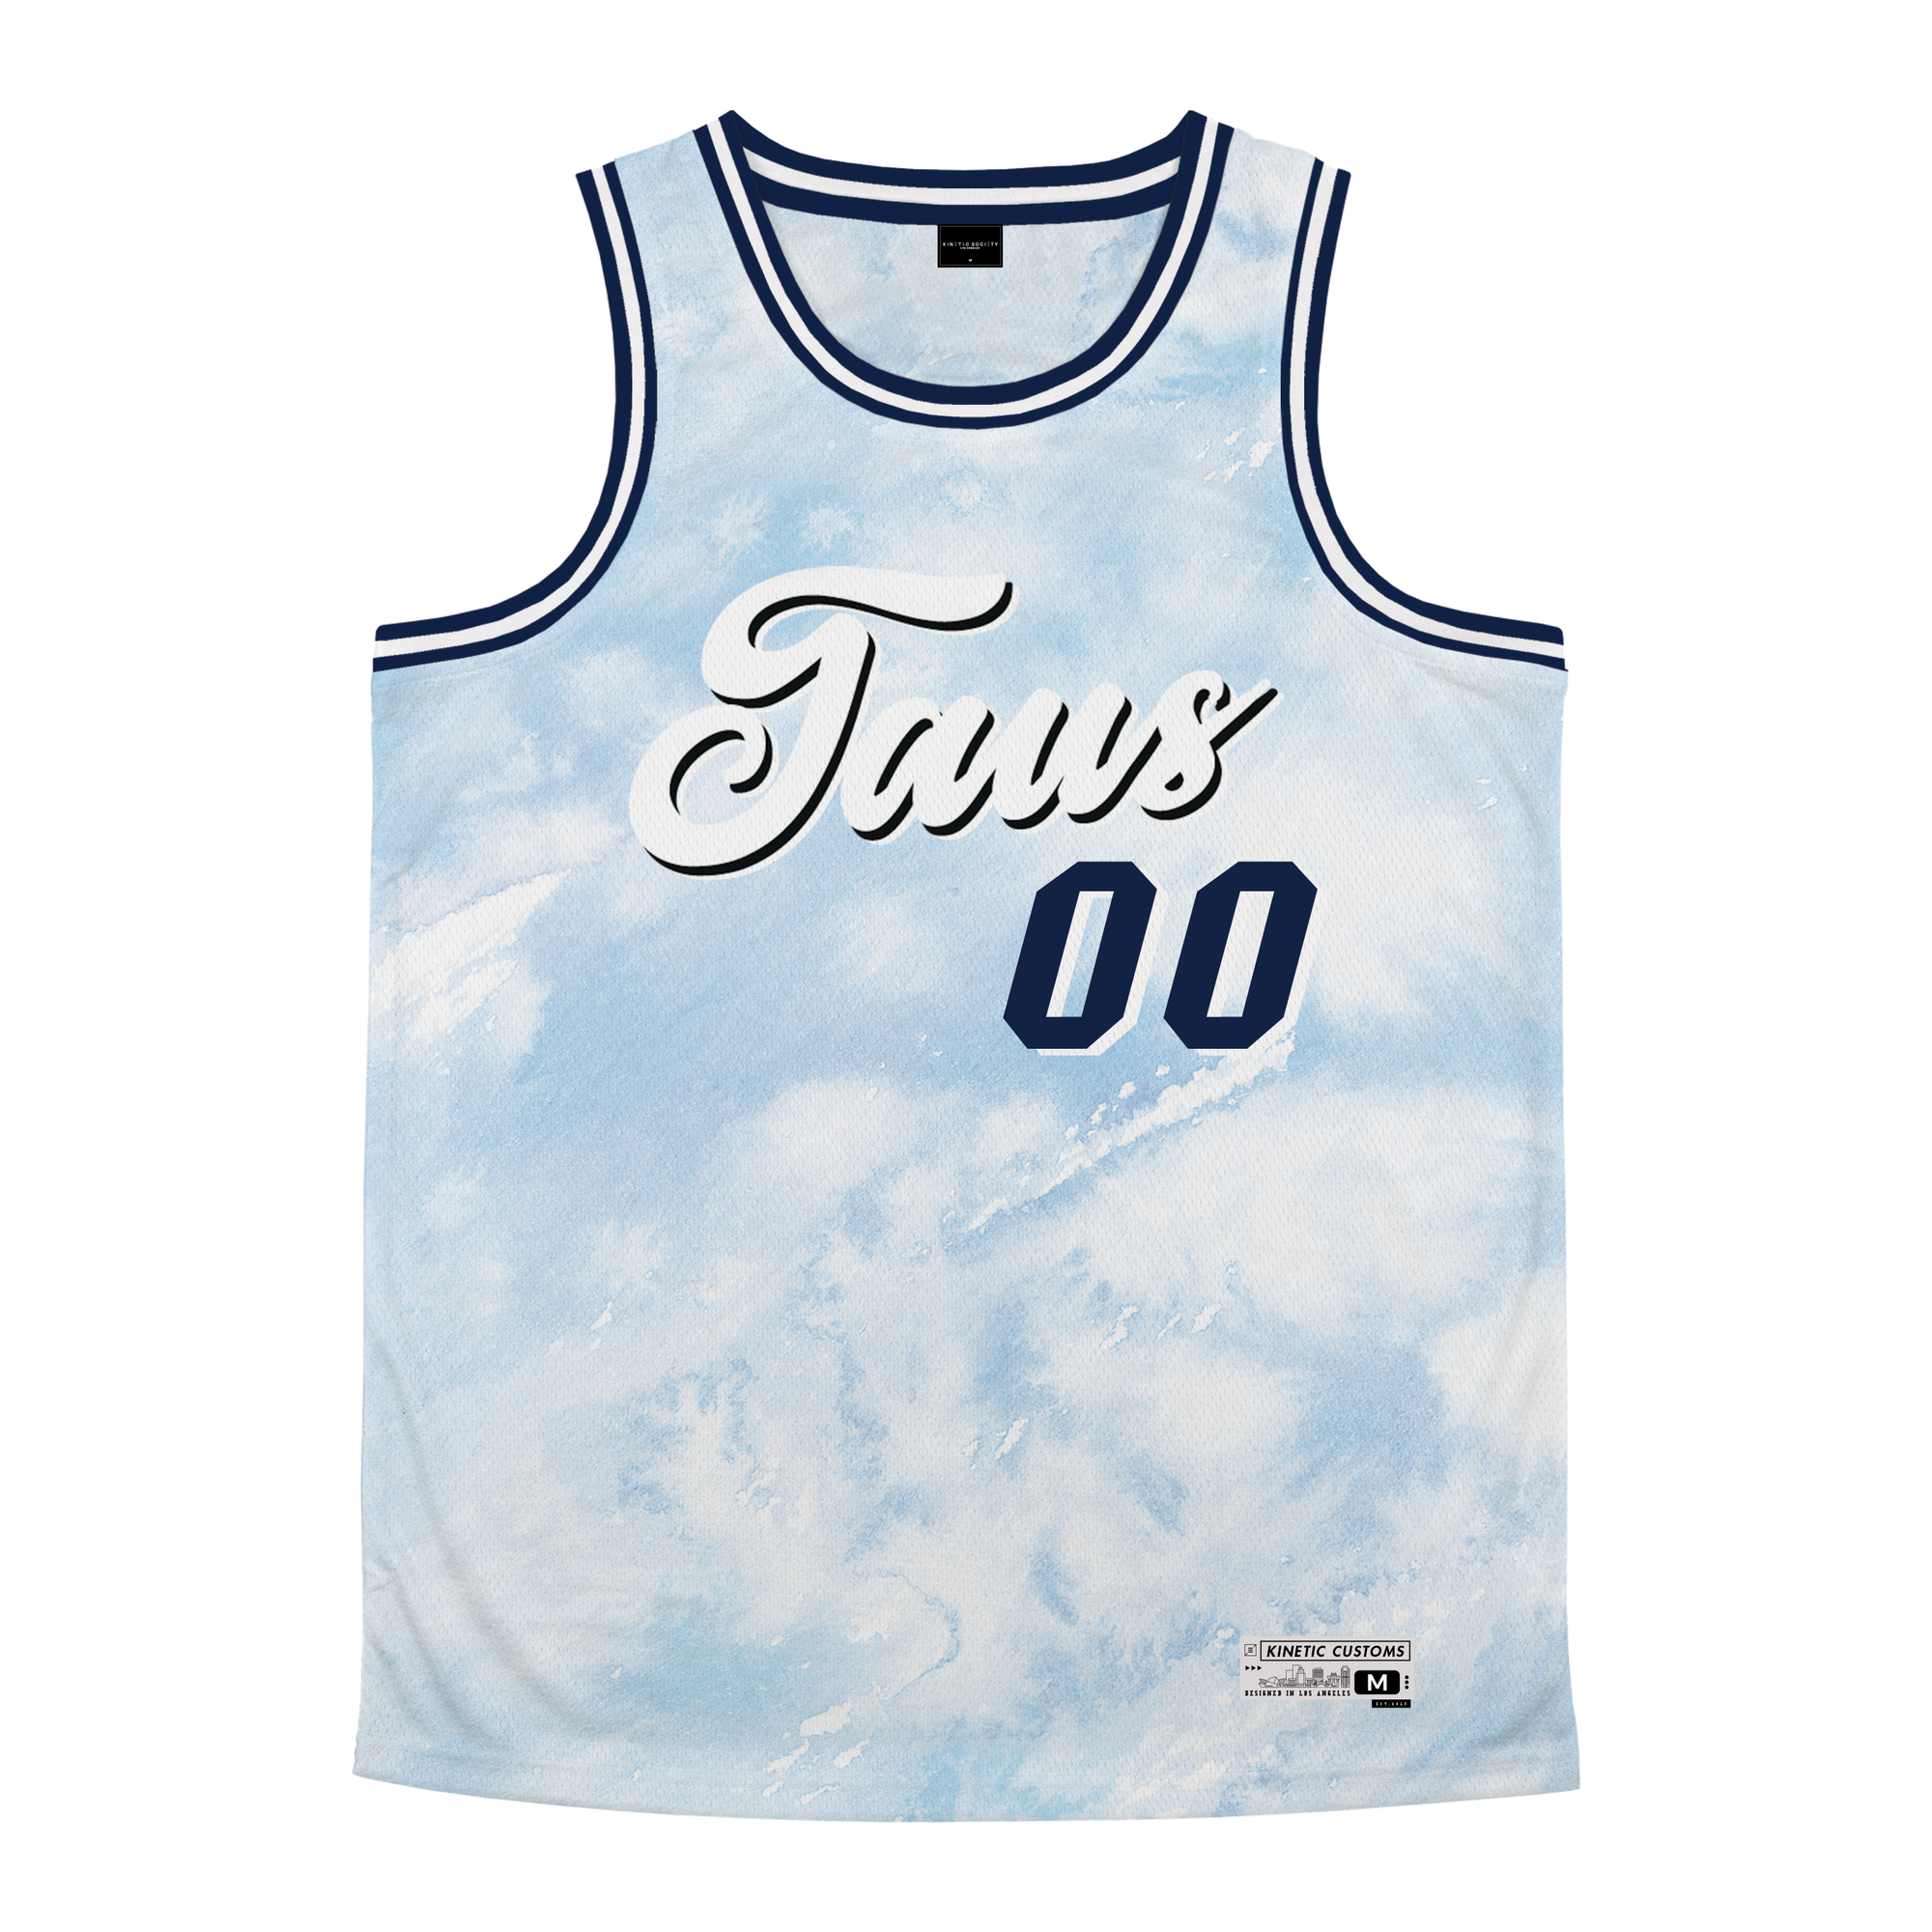 Alpha Tau Omega - Blue Sky Basketball Jersey